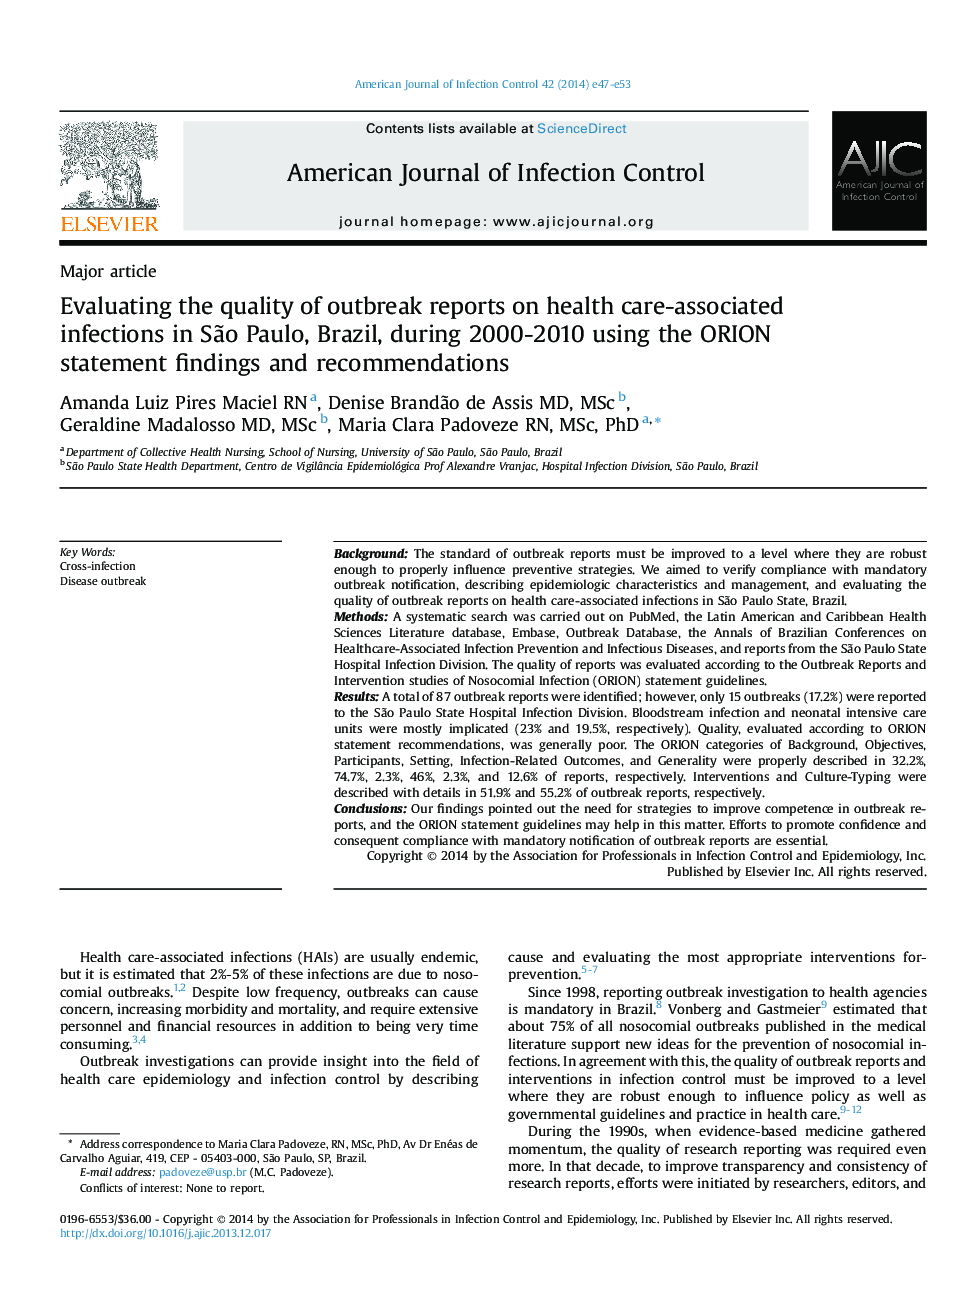 ارزیابی کیفیت گزارش های شایع در مورد عفونت های مربوط به مراقبت های بهداشتی در سائوپائولو، برزیل، در طول سال های 2000-2010 با استفاده از یافته ها و و توصیه های بیانیه ORION 